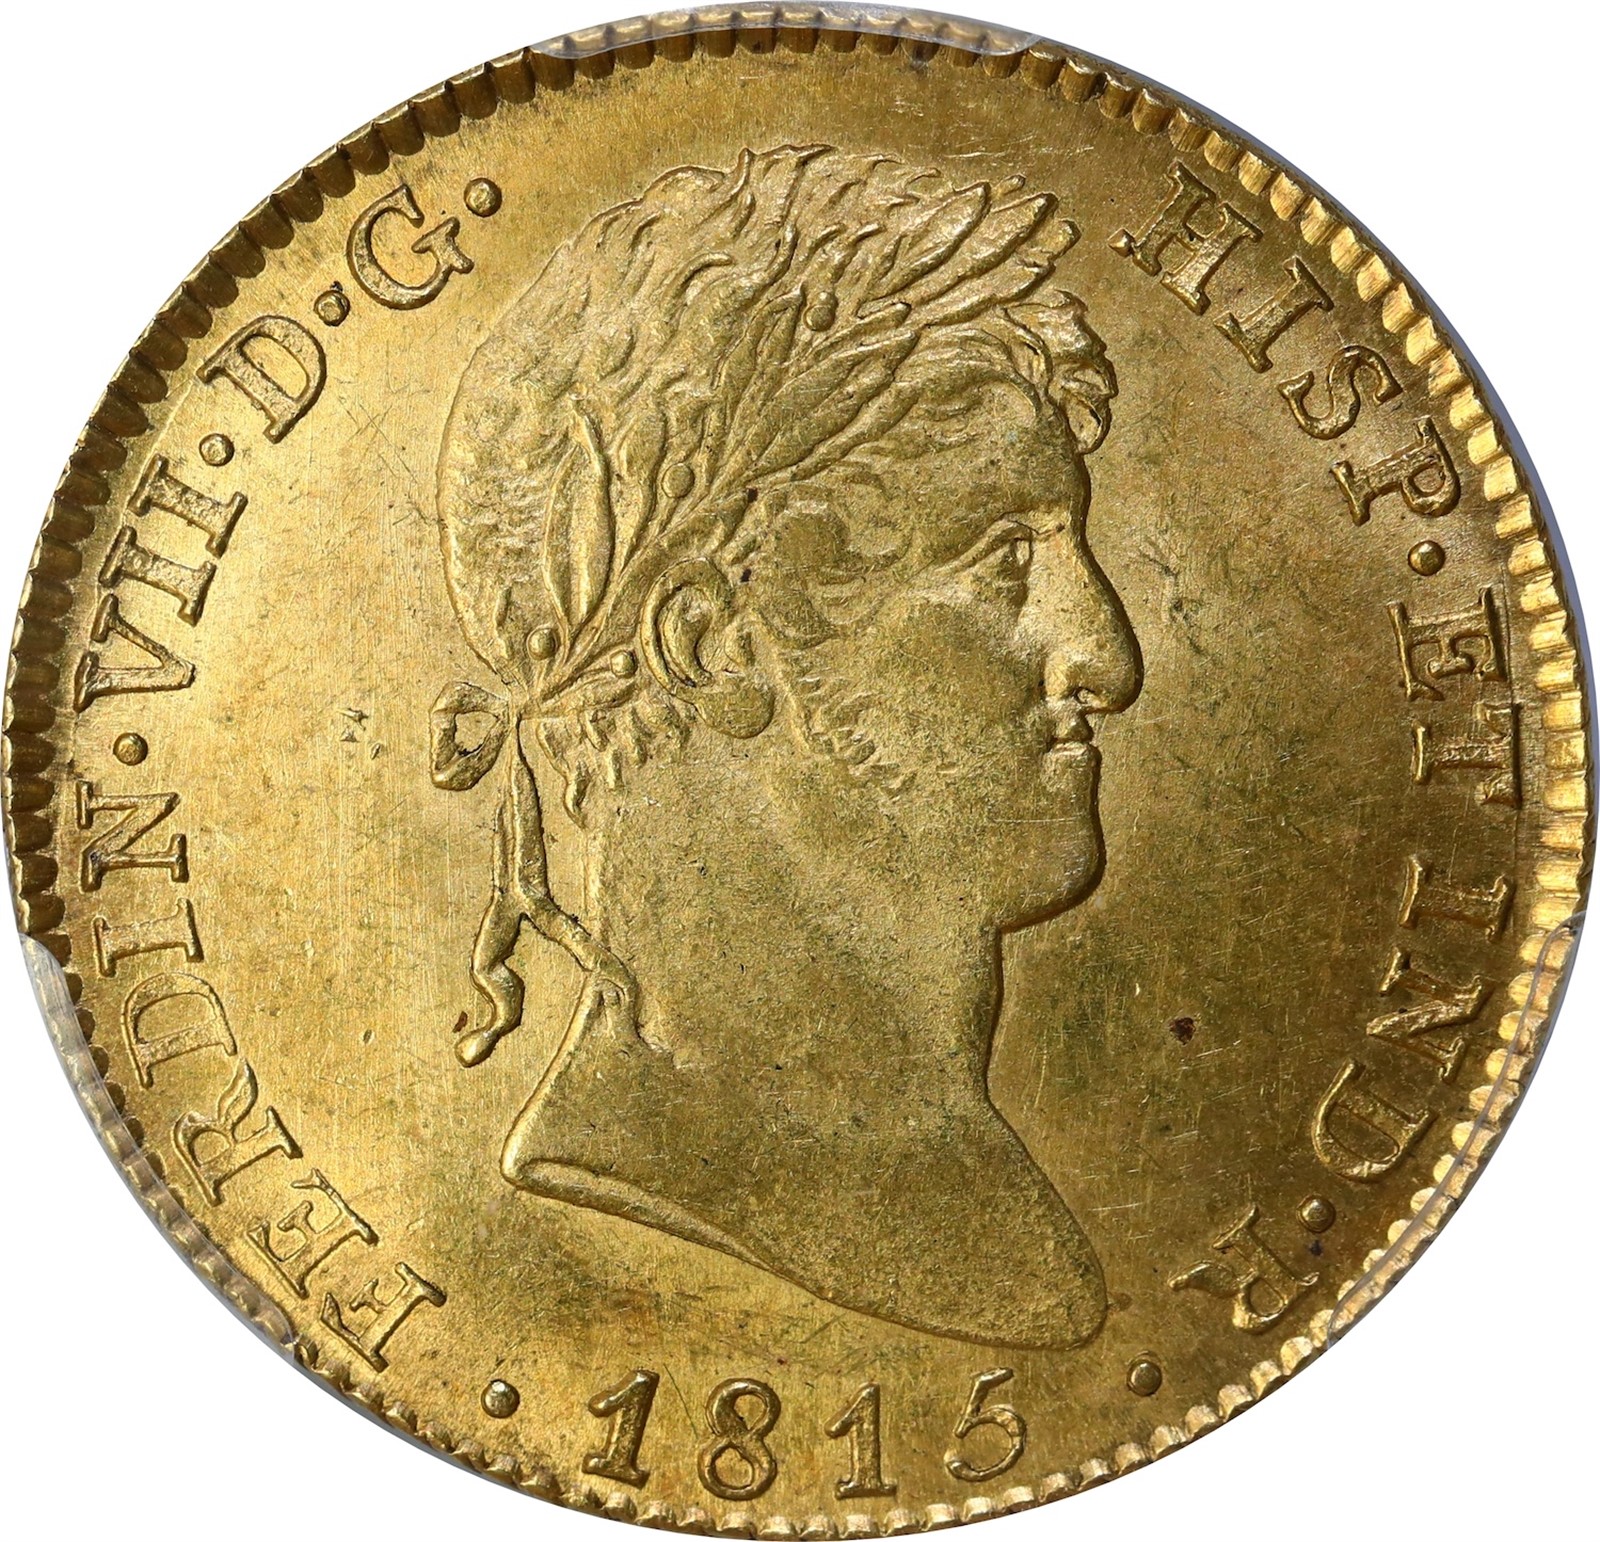 SPAIN. Ferdinand VII. 4 Escudos 1815-M GJ. PCGS MS63